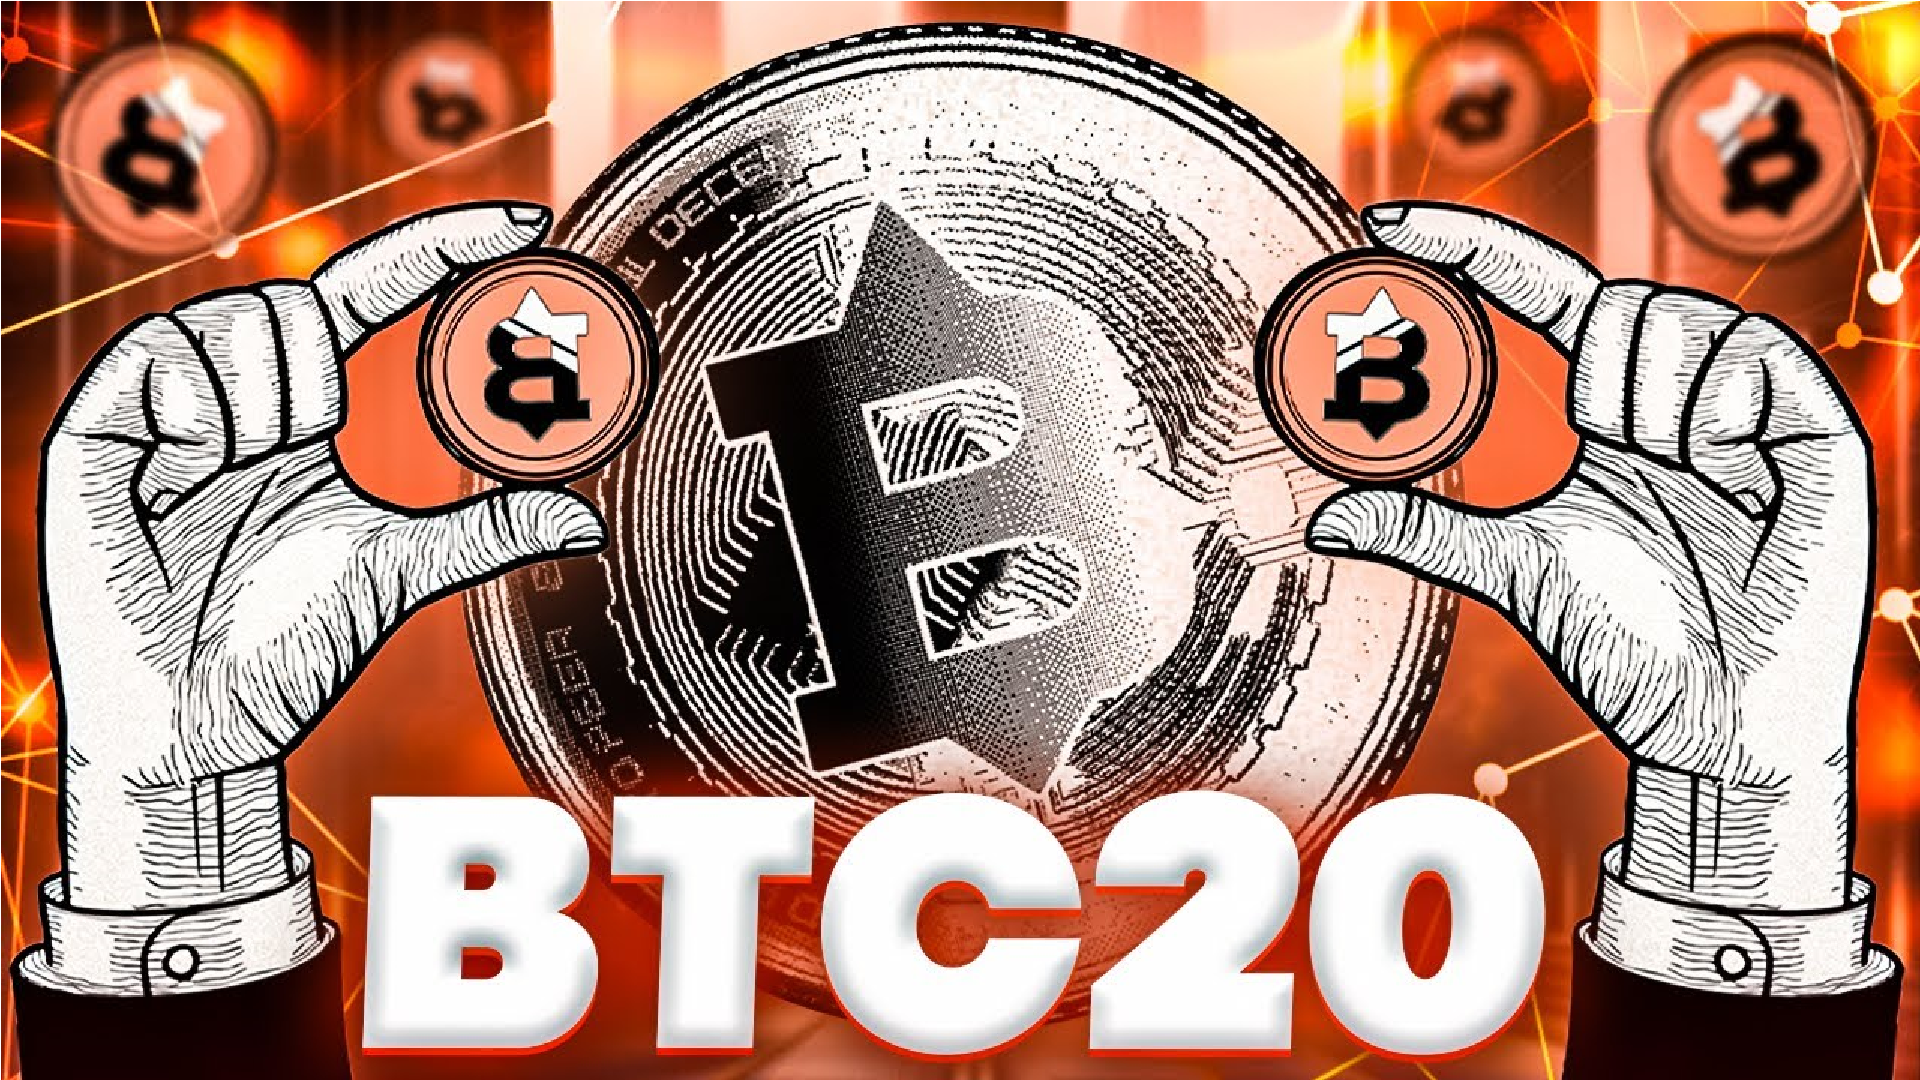 Bitcoin Price Chops at $30,000, New $1 BTC20 Token Seen as Bitcoin Alternative